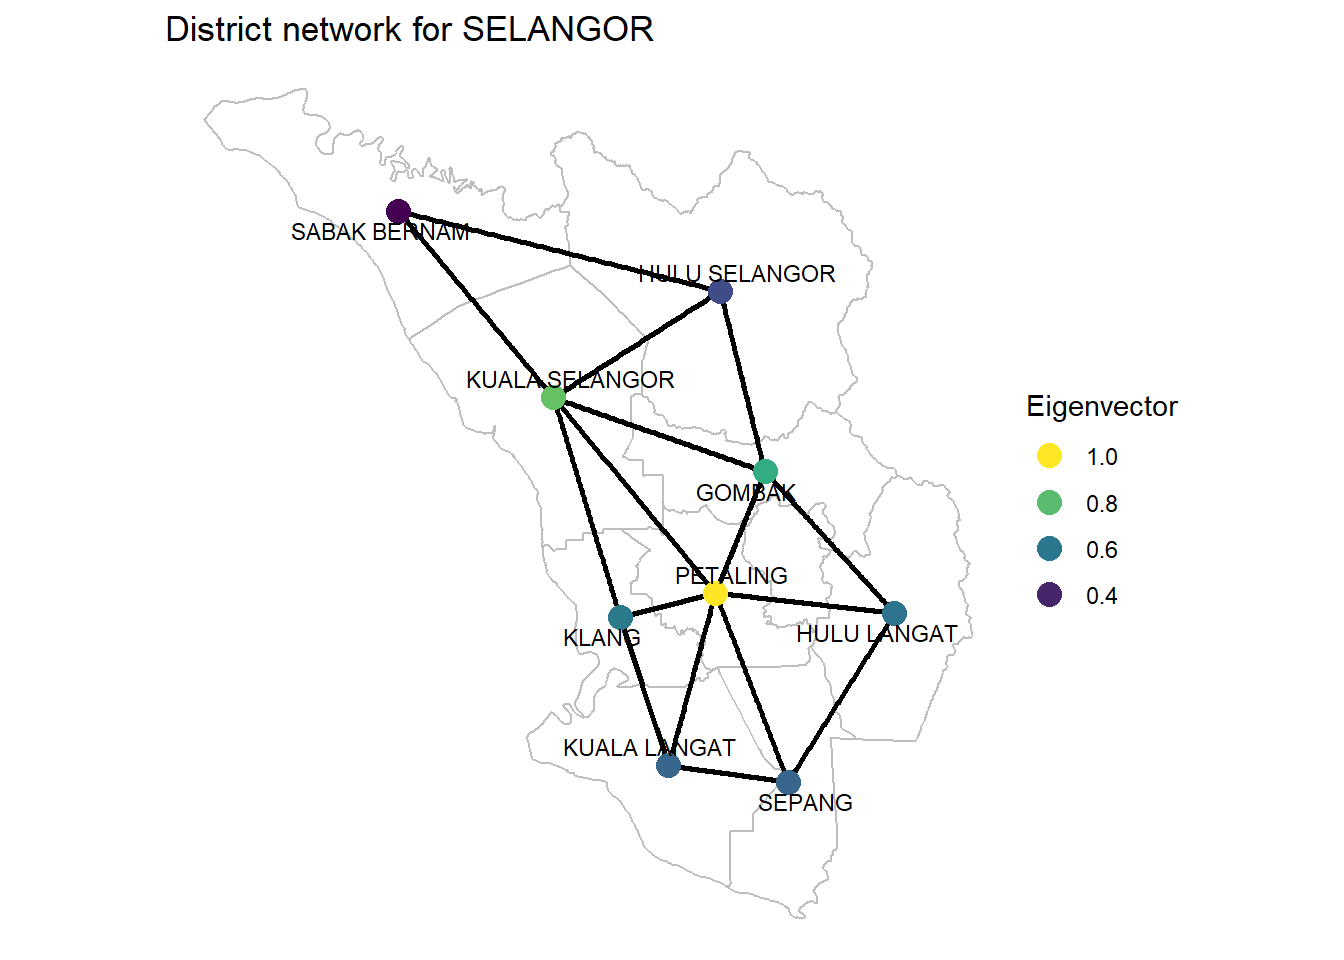 Eigenvector of SELANGOR district network